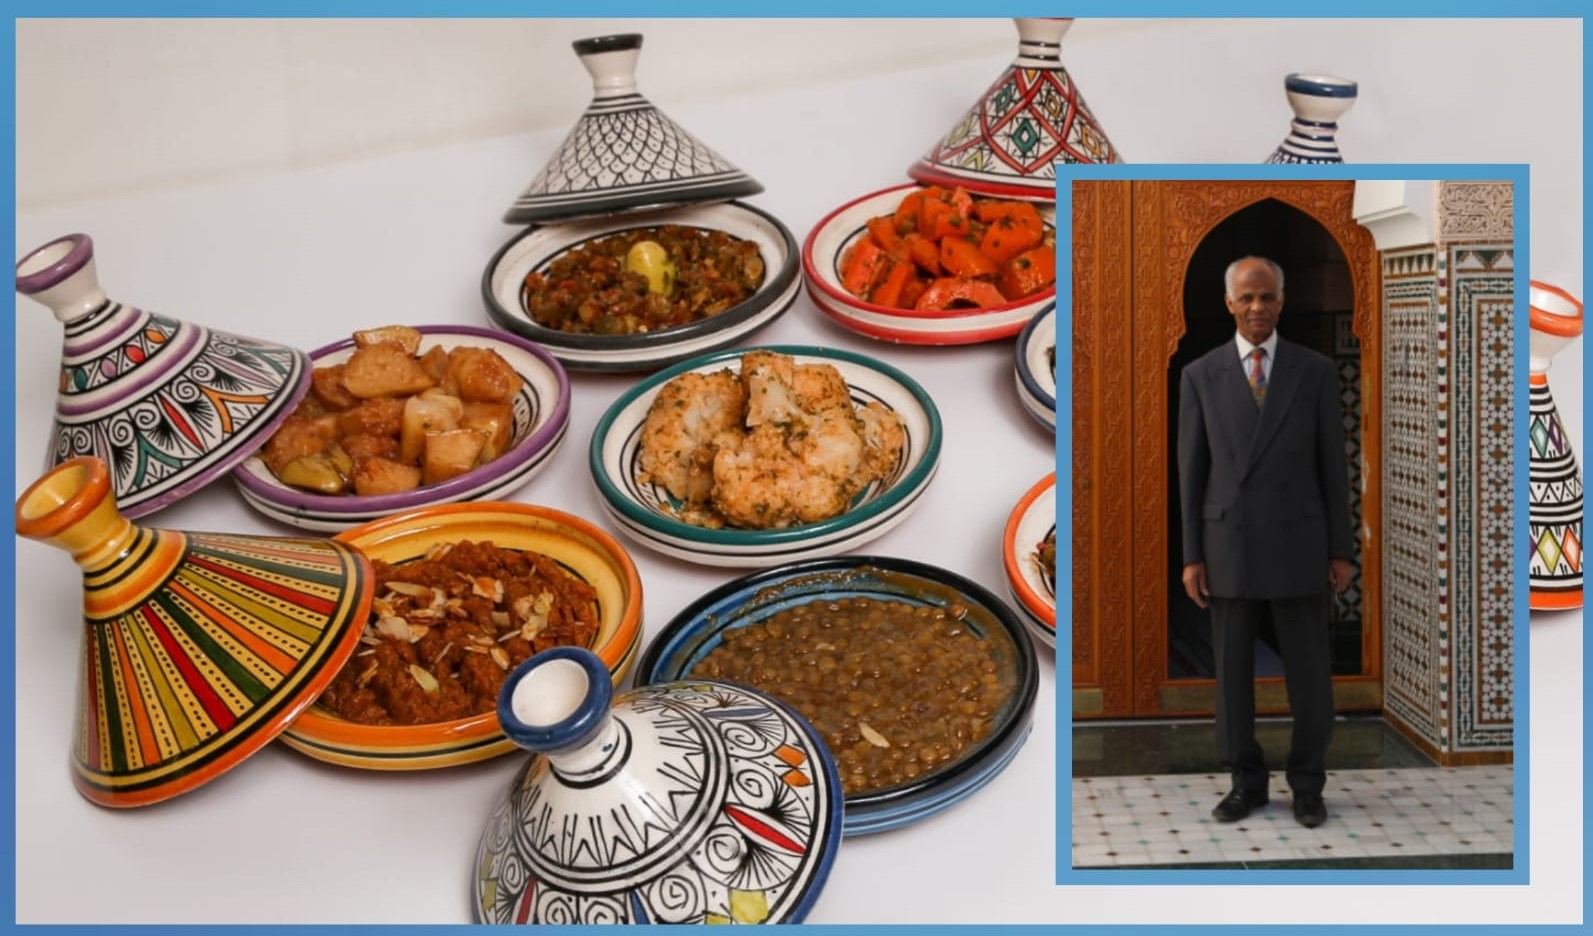 مدينة طنجة تحتضن الجمع العام التأسيسي لأكاديمية فنون الطبخ